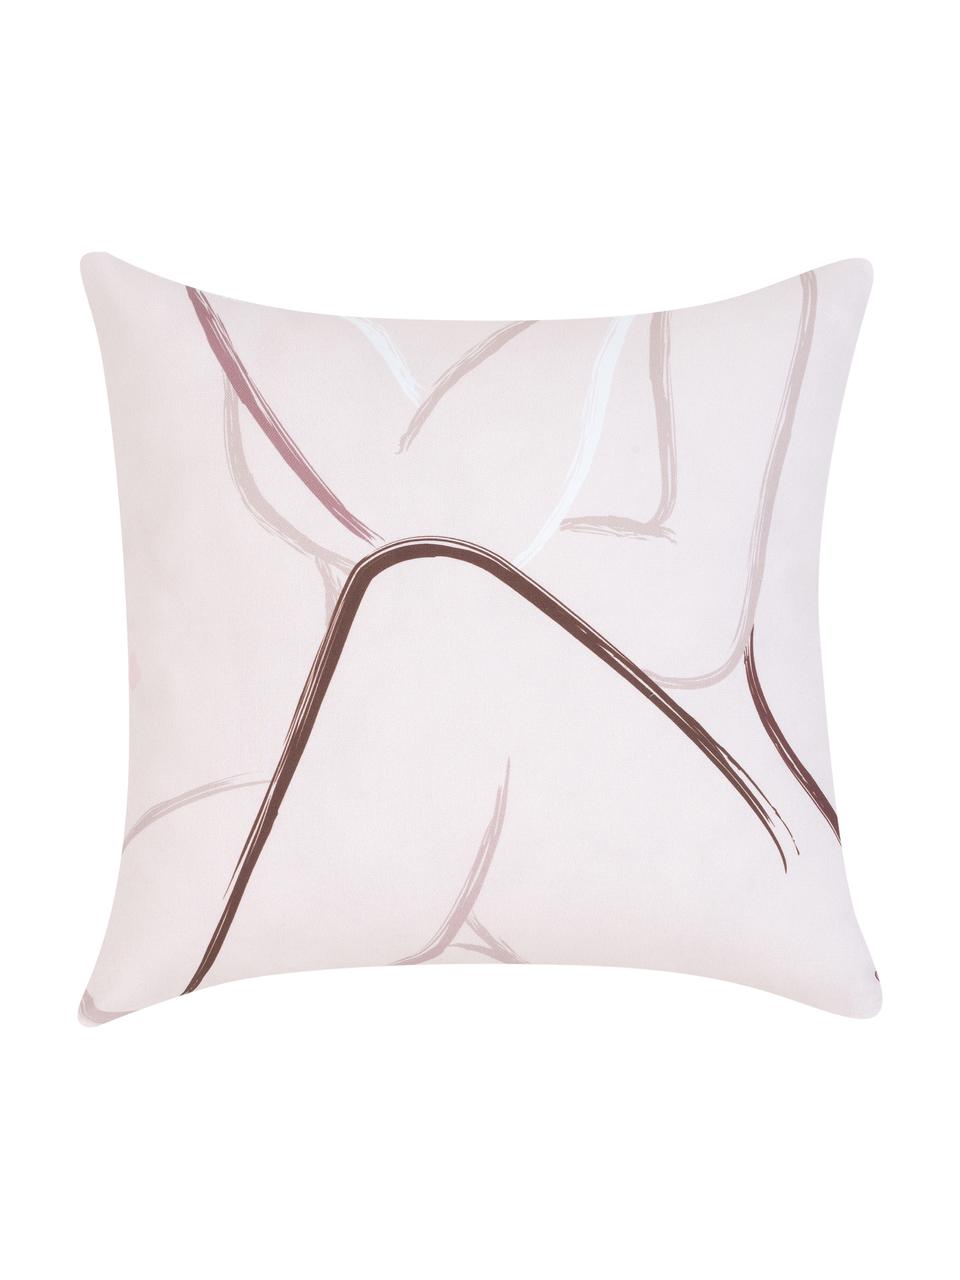 Kissenhülle Curves mit gezeichnetem Print, 100% Baumwolle, Rosa,Weiß, 40 x 40 cm